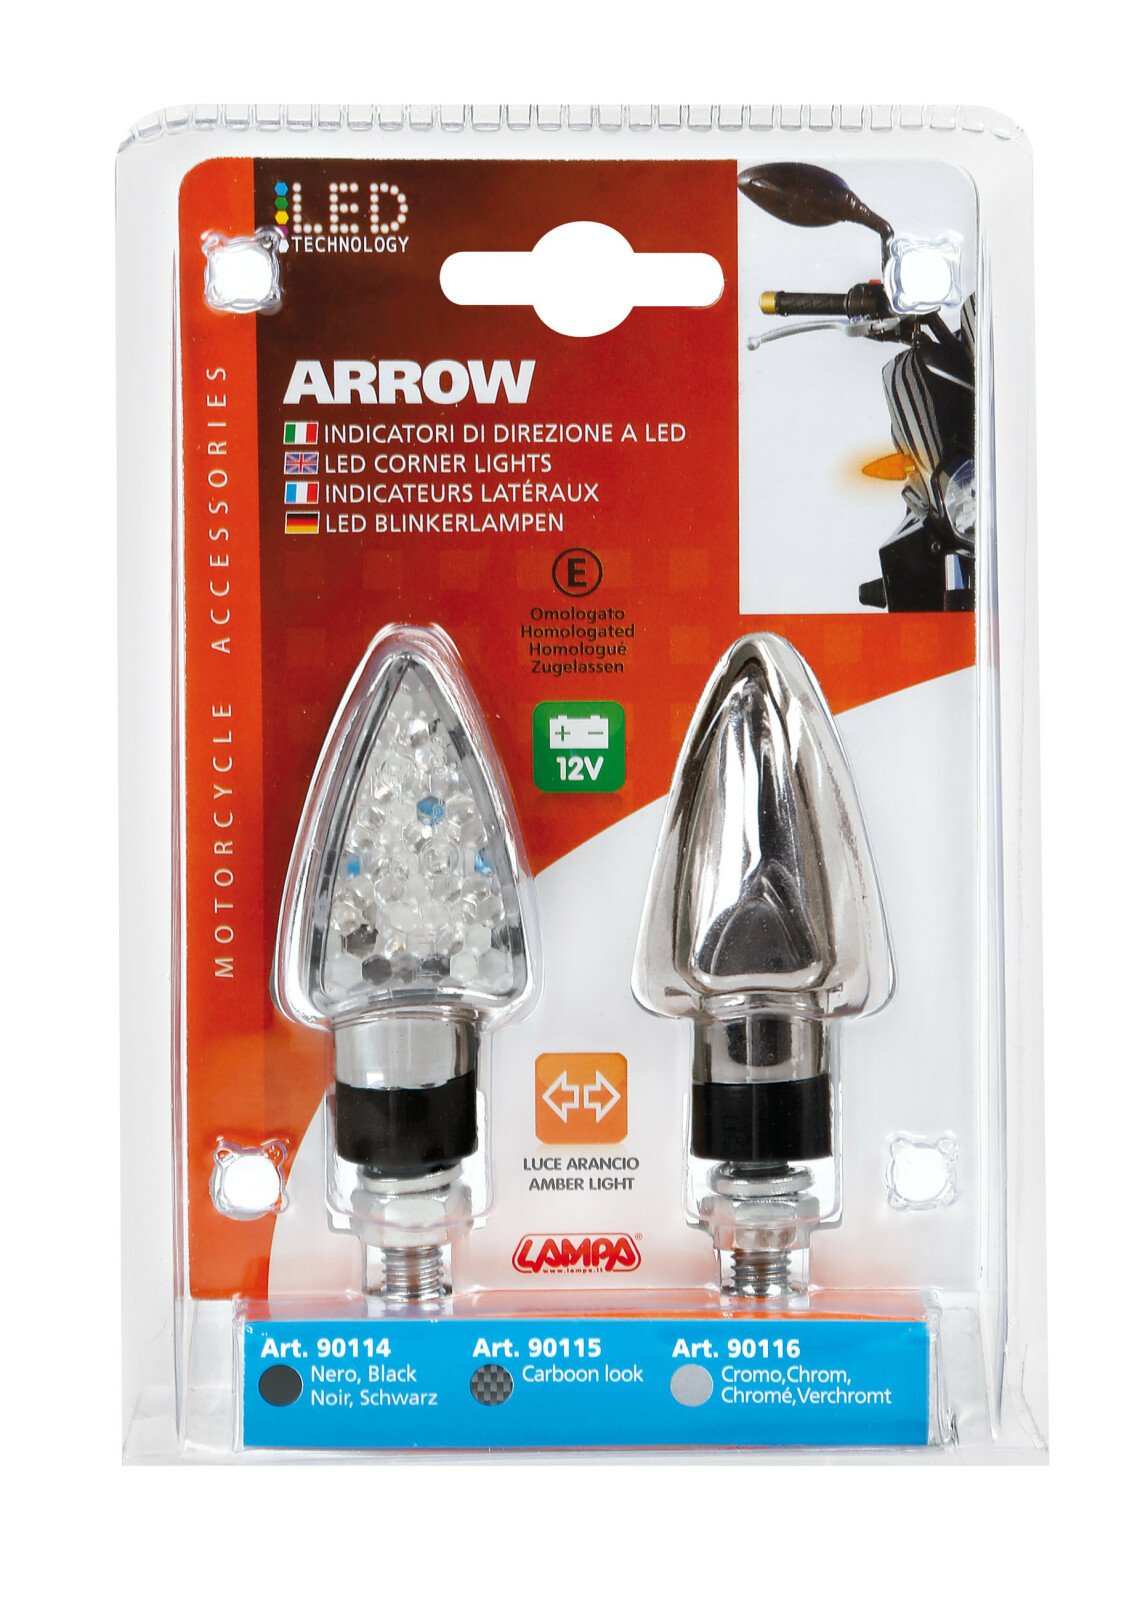 Arrow-2, corner lights - 12V LED - Chrome thumb